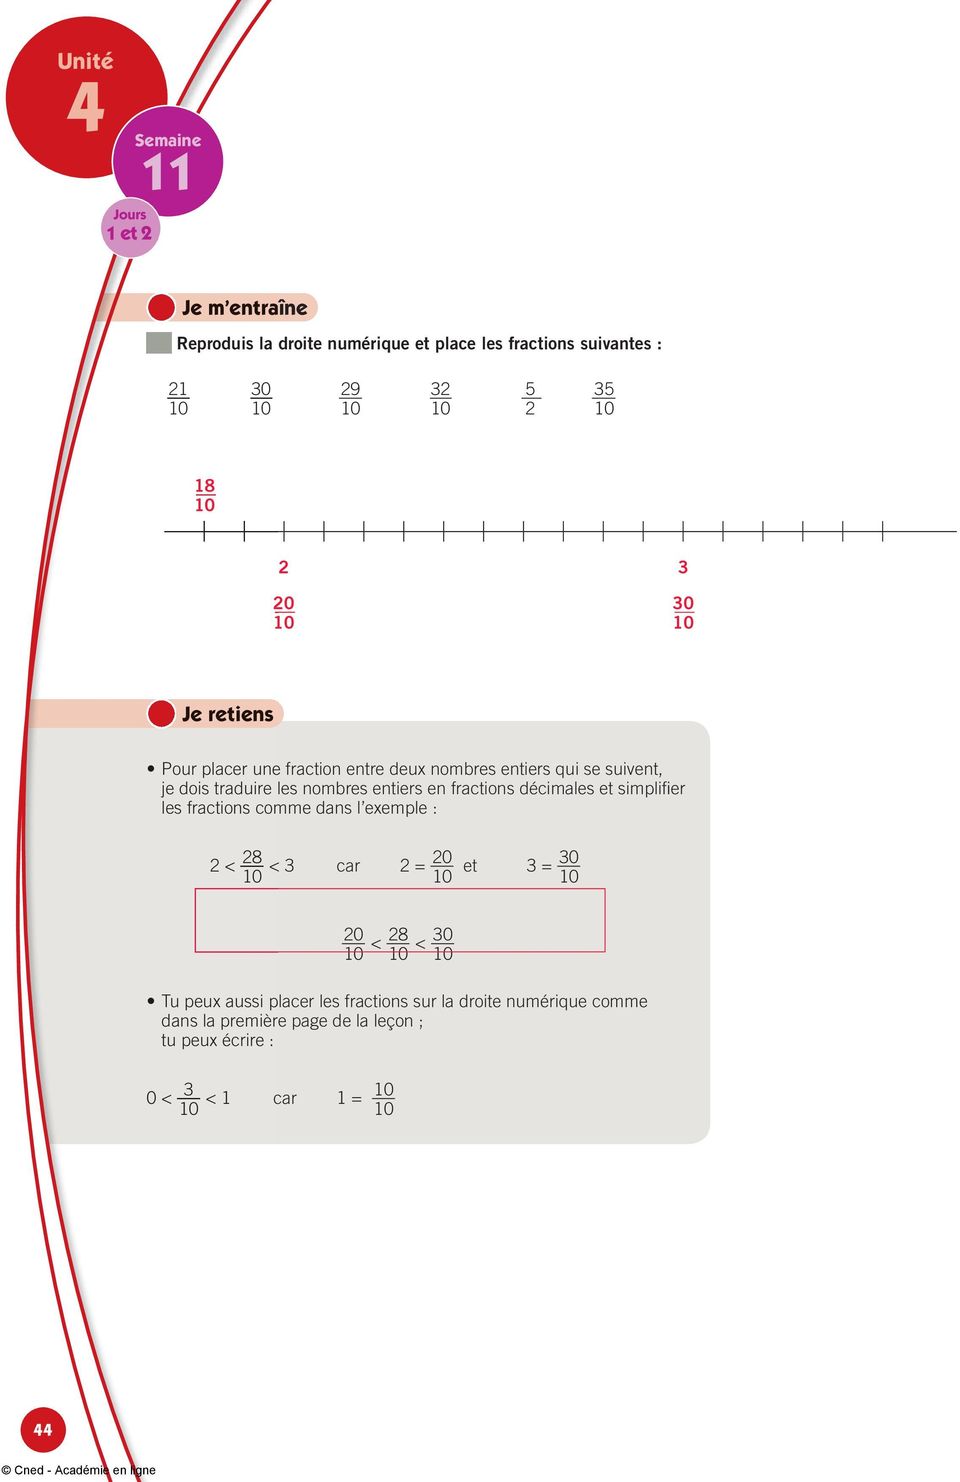 décimales et simplifi er les fractions comme dans l exemple : 2 < 28 3 car 2 = 20 < et 3 = 20 < 28 < Tu peux